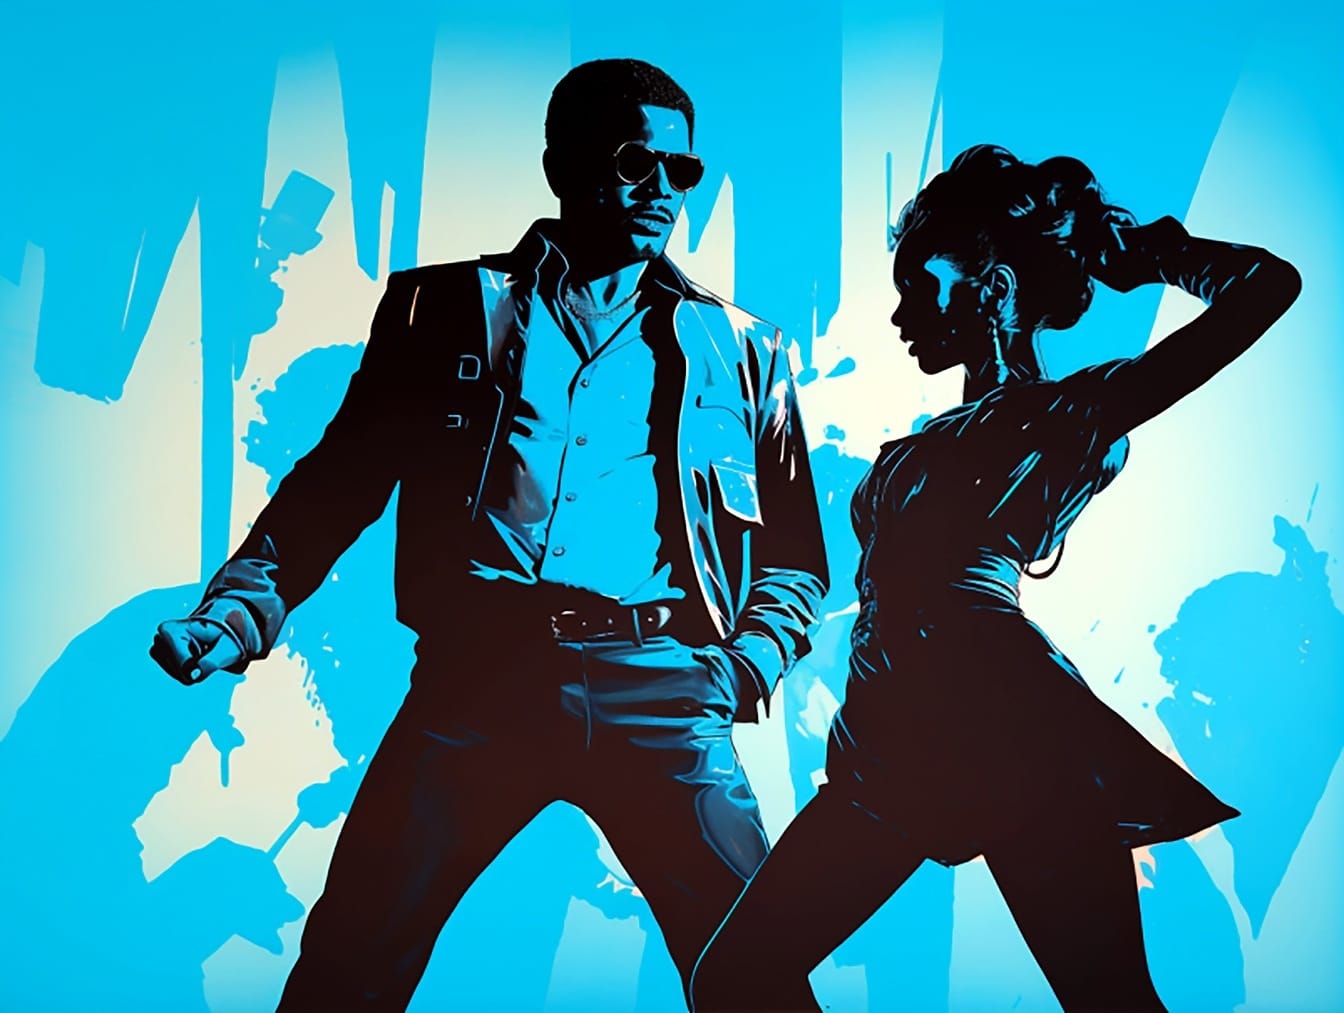 Silhueta do homem e da mulher jovem dançando no estilo gráfico da arte pop dos anos 80